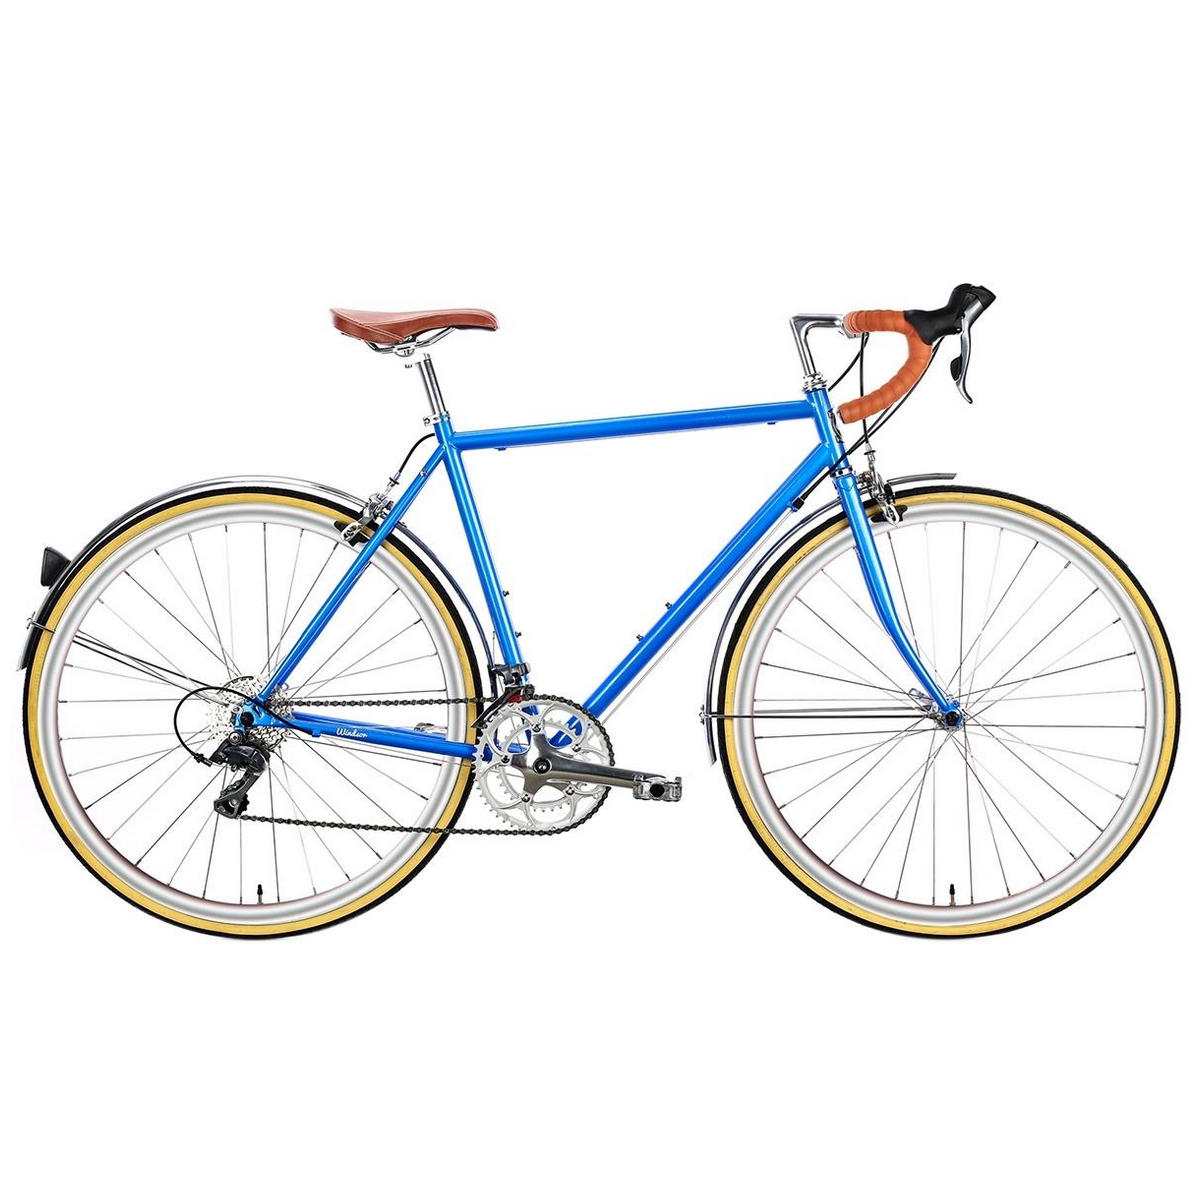 Bicicleta urbana TROY 16spd azul windsor pequena 58cm